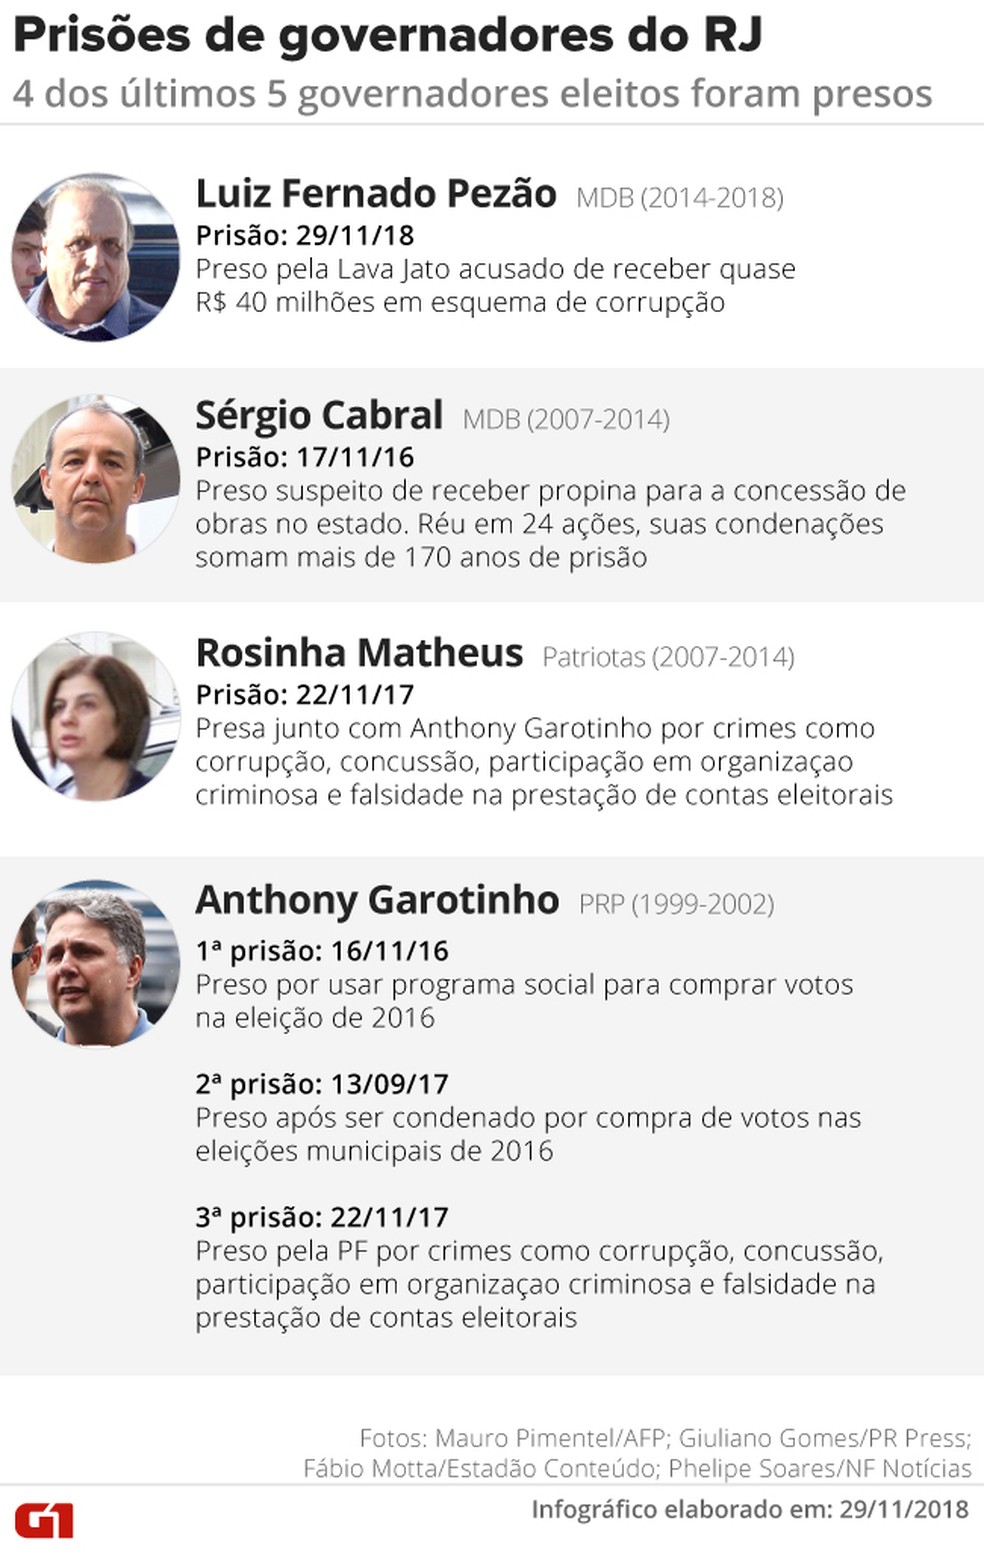 4 dos últimos 5 governadores eleitos no RJ foram ou estão presos — Foto: Arte/G1